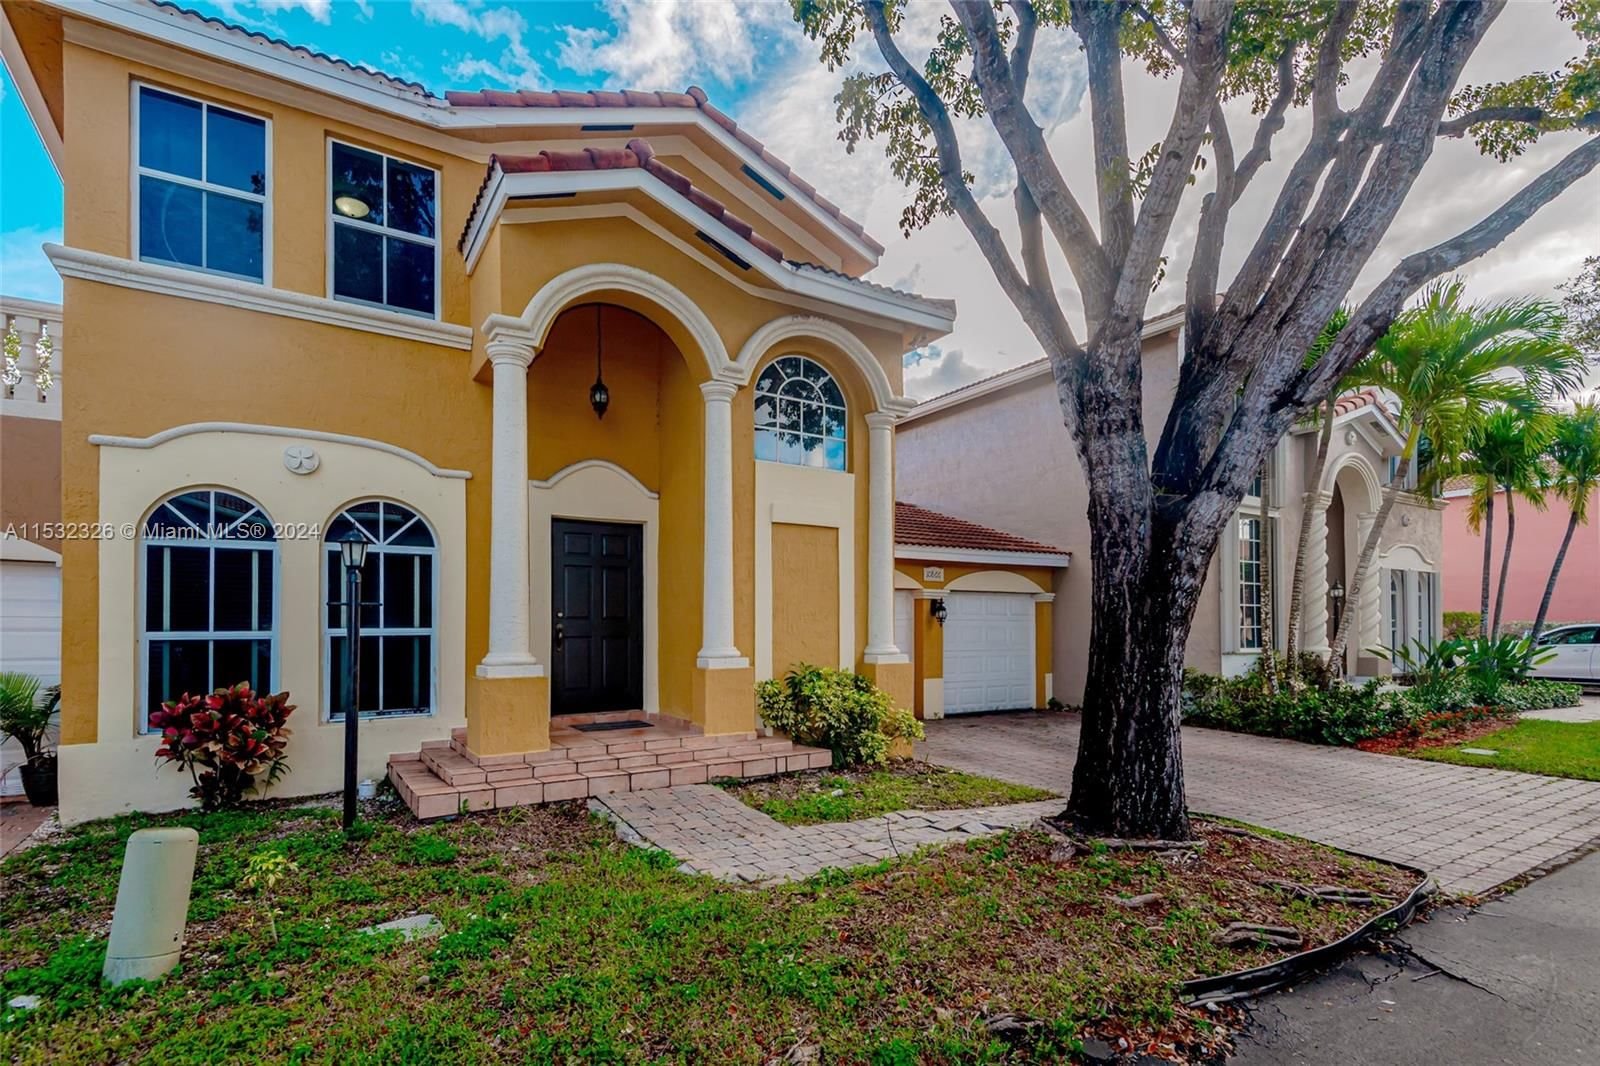 Real estate property located at 10866 51st Ln, Miami-Dade County, PIAZZA VECCHIA, Doral, FL